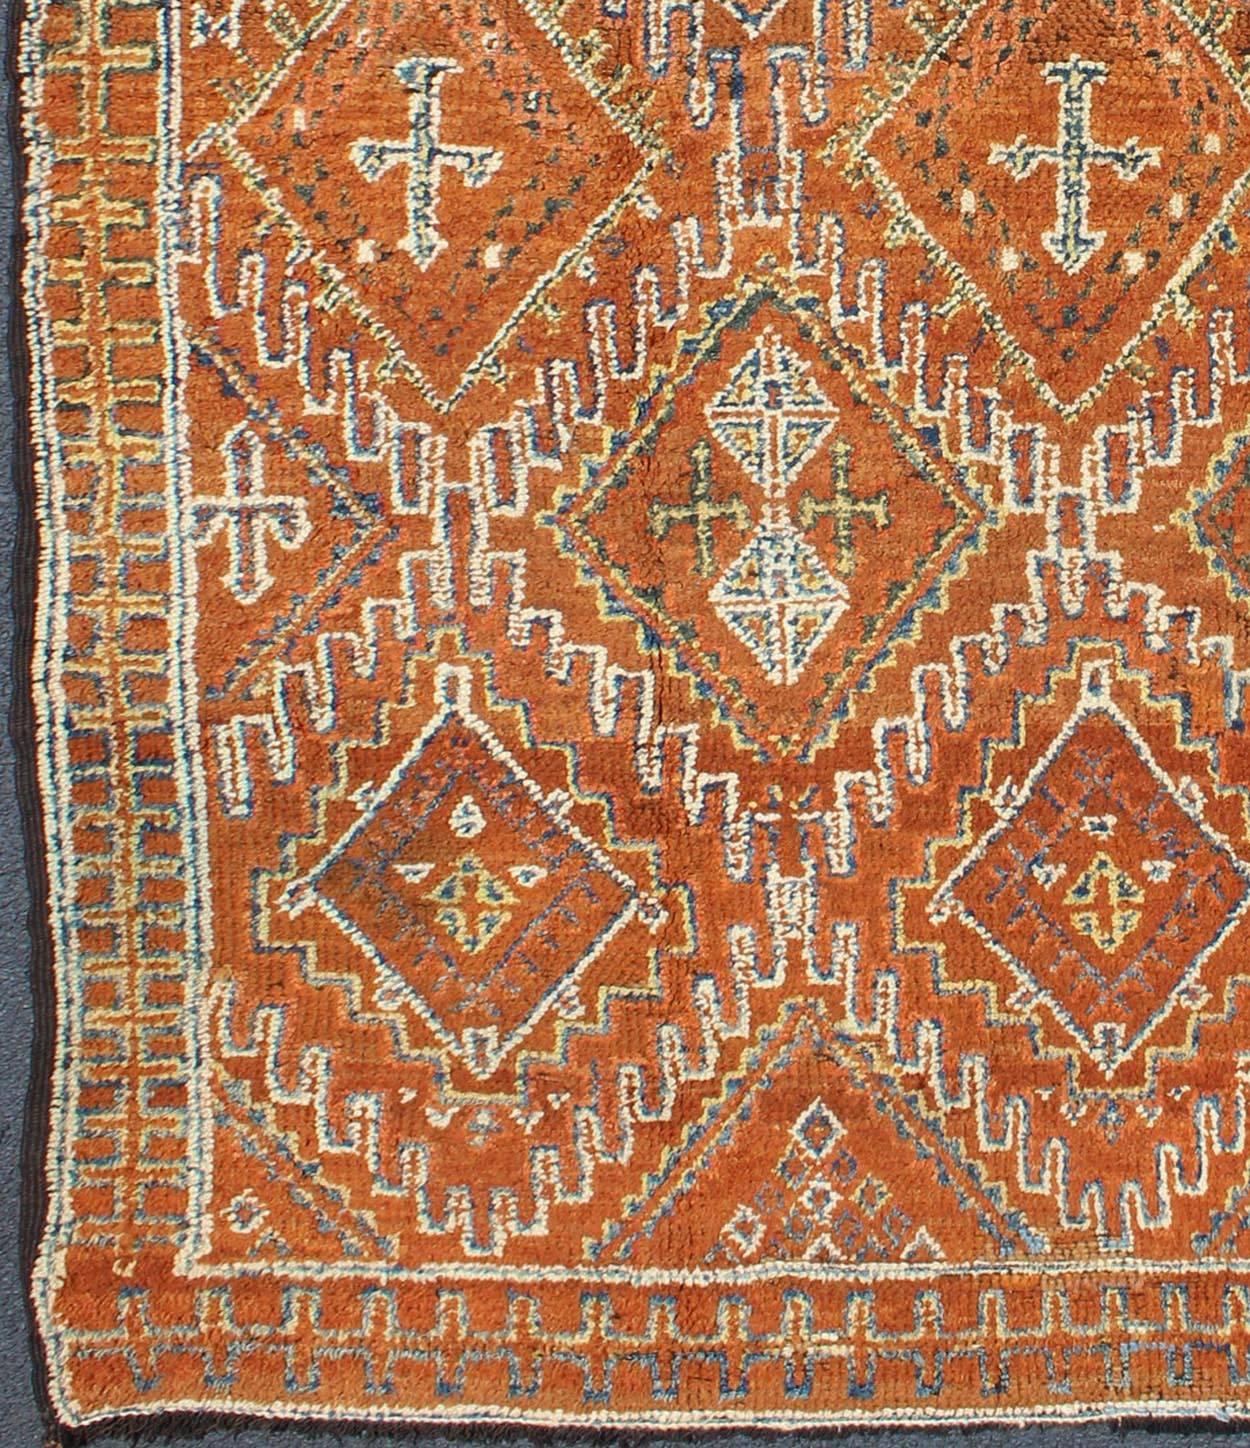 Dieser prächtige marokkanische Teppich ist aufgrund seines frühen Alters eher selten. Der Teppich besteht aus einem weichen Wollflor in einem üppigen, satten Braunton. Ein zartes Muster aus Rauten bedeckt das gesamte Feld in verschiedenen sanften